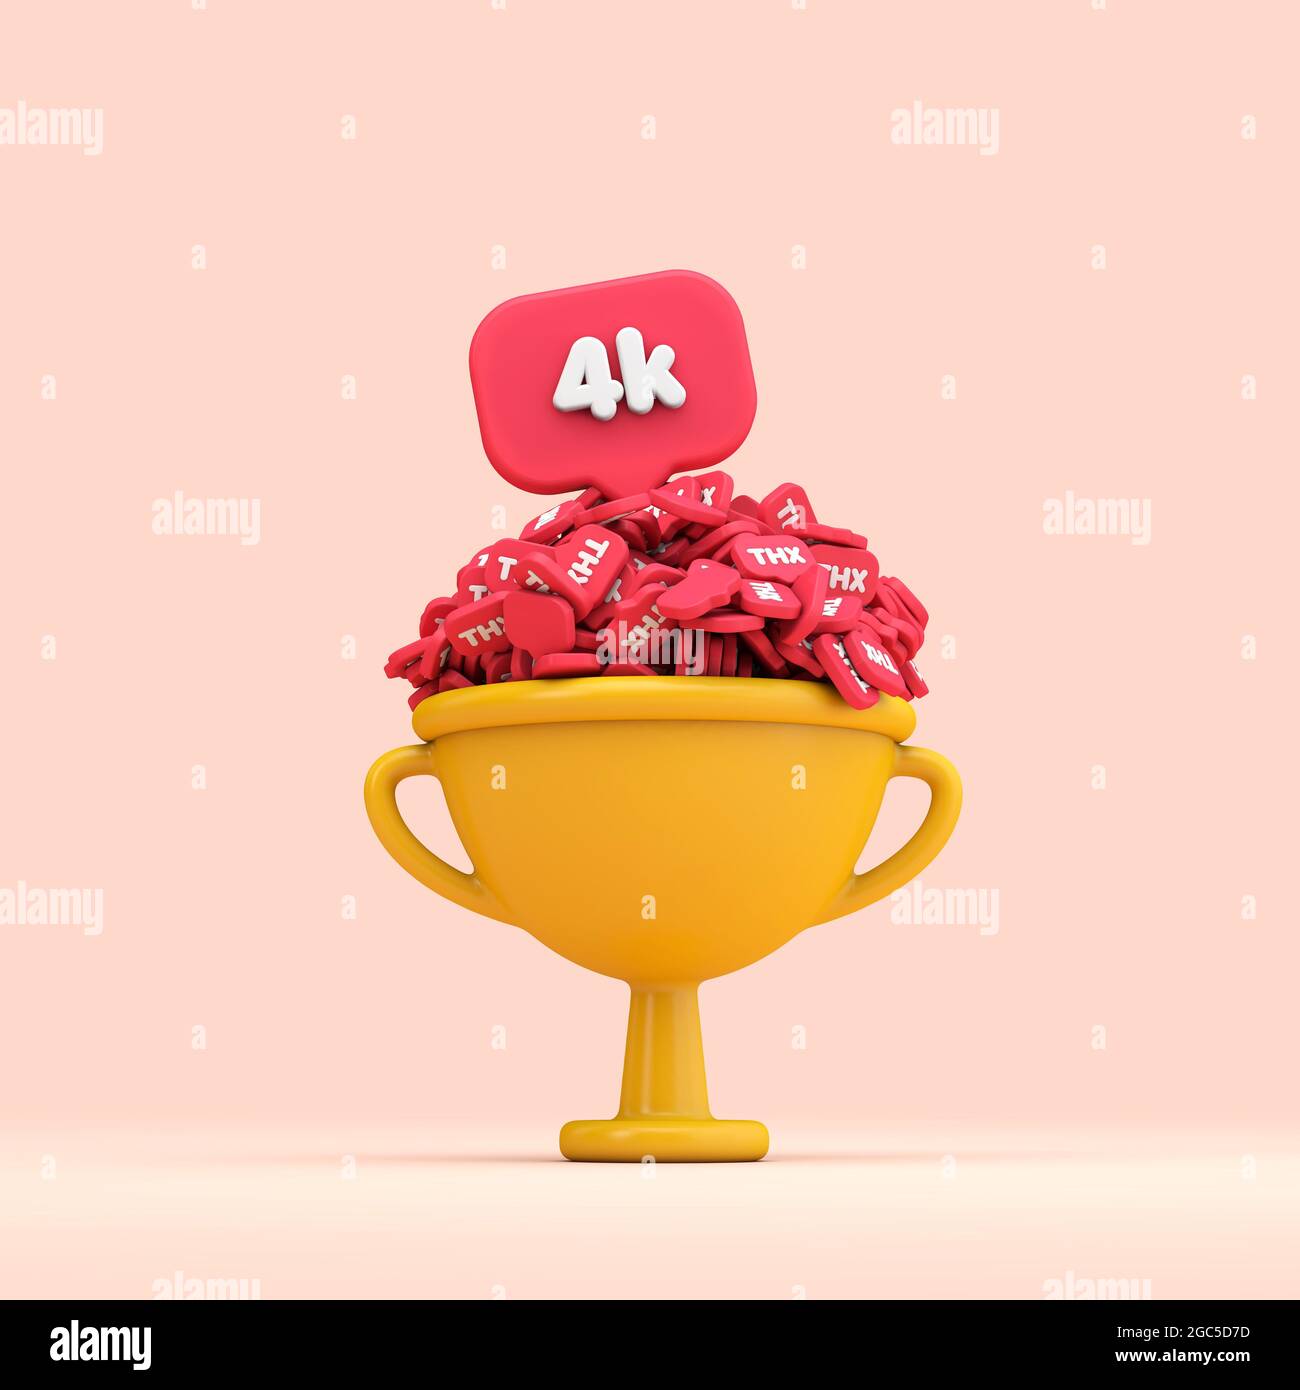 Grazie ai fan dei social media 4k per festeggiare il trofeo. Rendering 3D Foto Stock